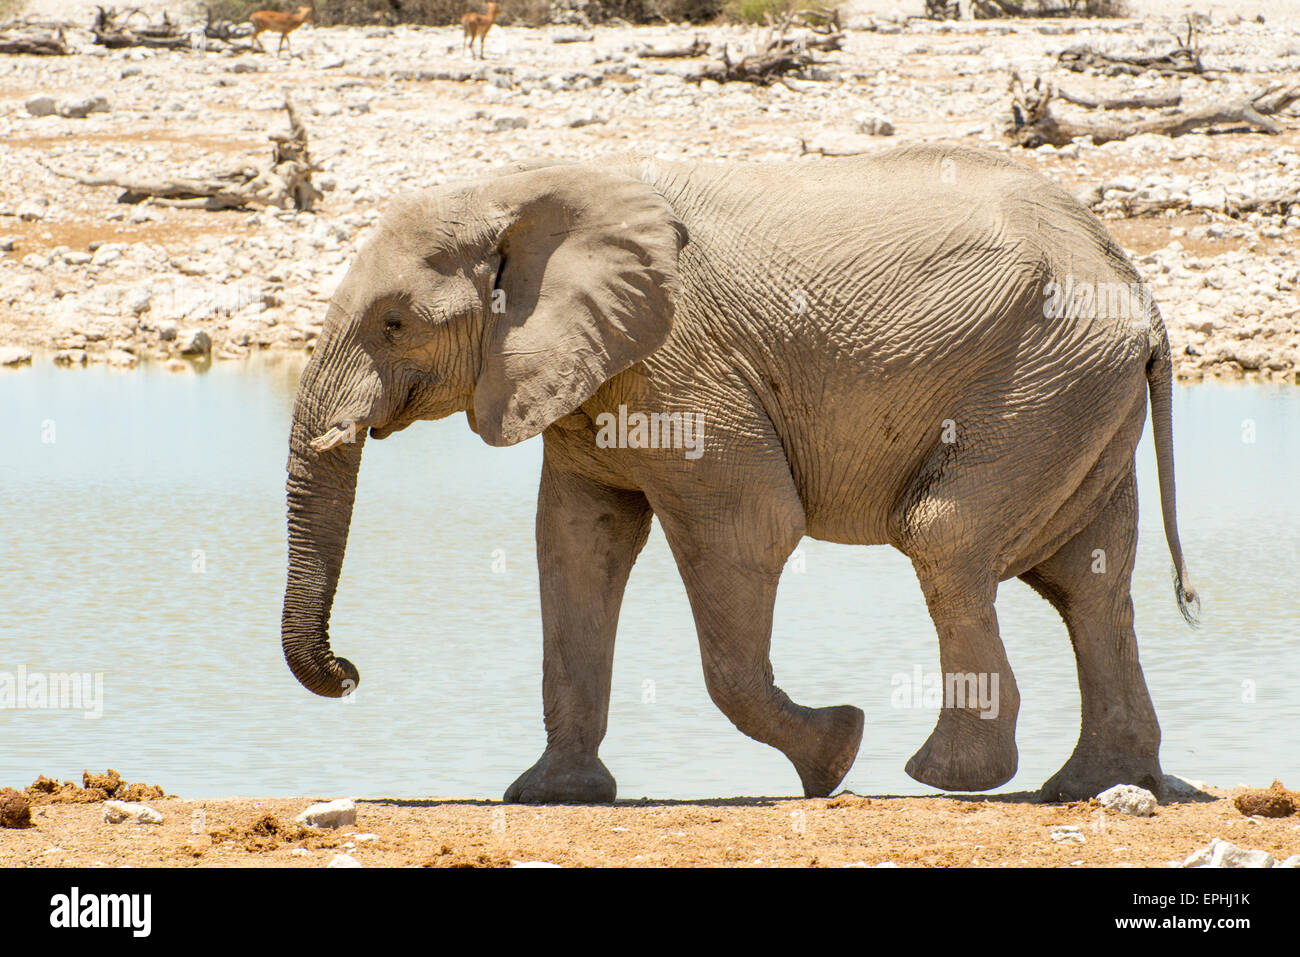 Africa, Namibia. Etosha National Park. Single elephant walking along waterhole. Stock Photo